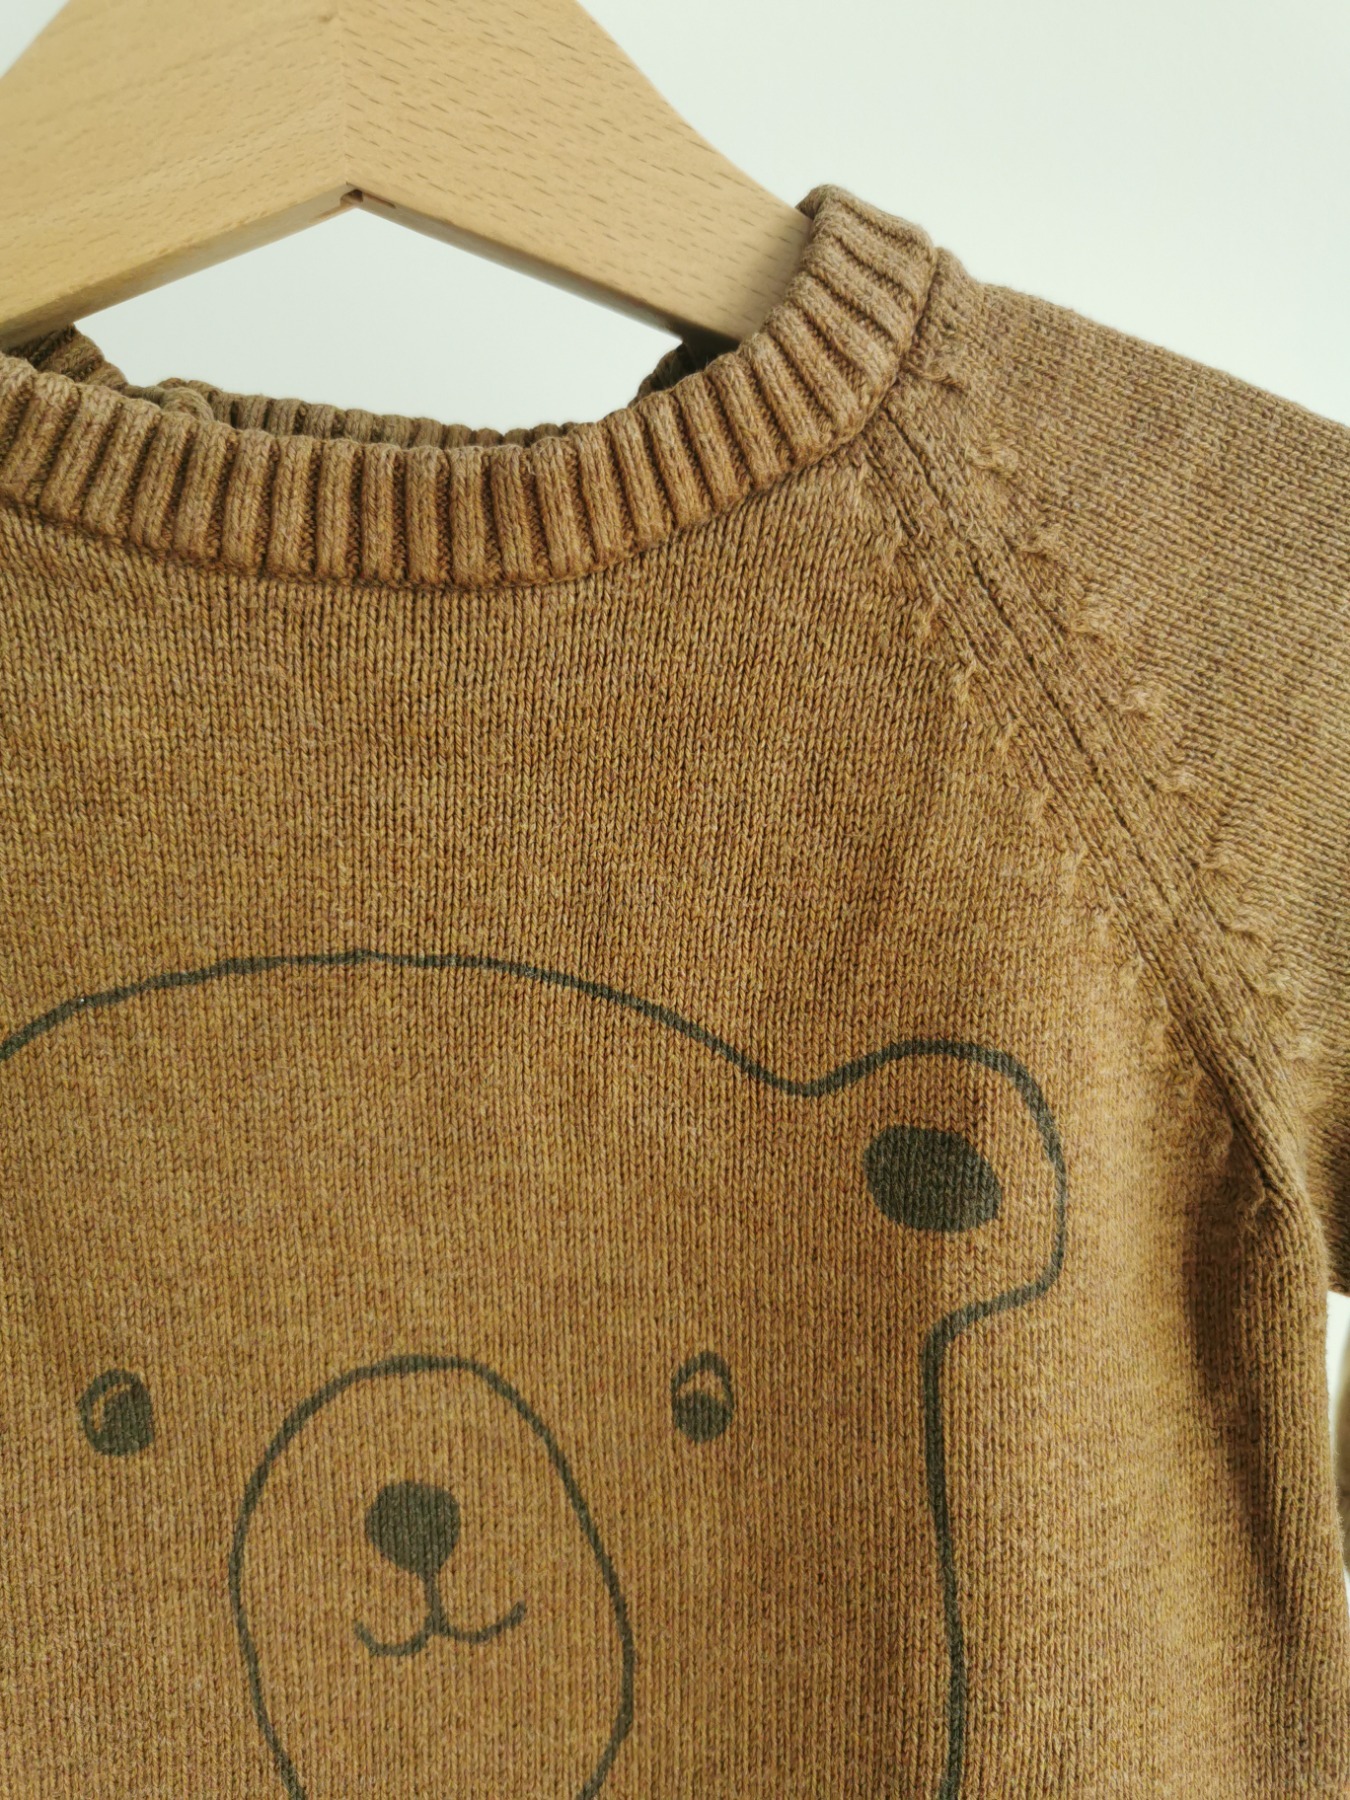 Pullover Bär - Größe 86 2